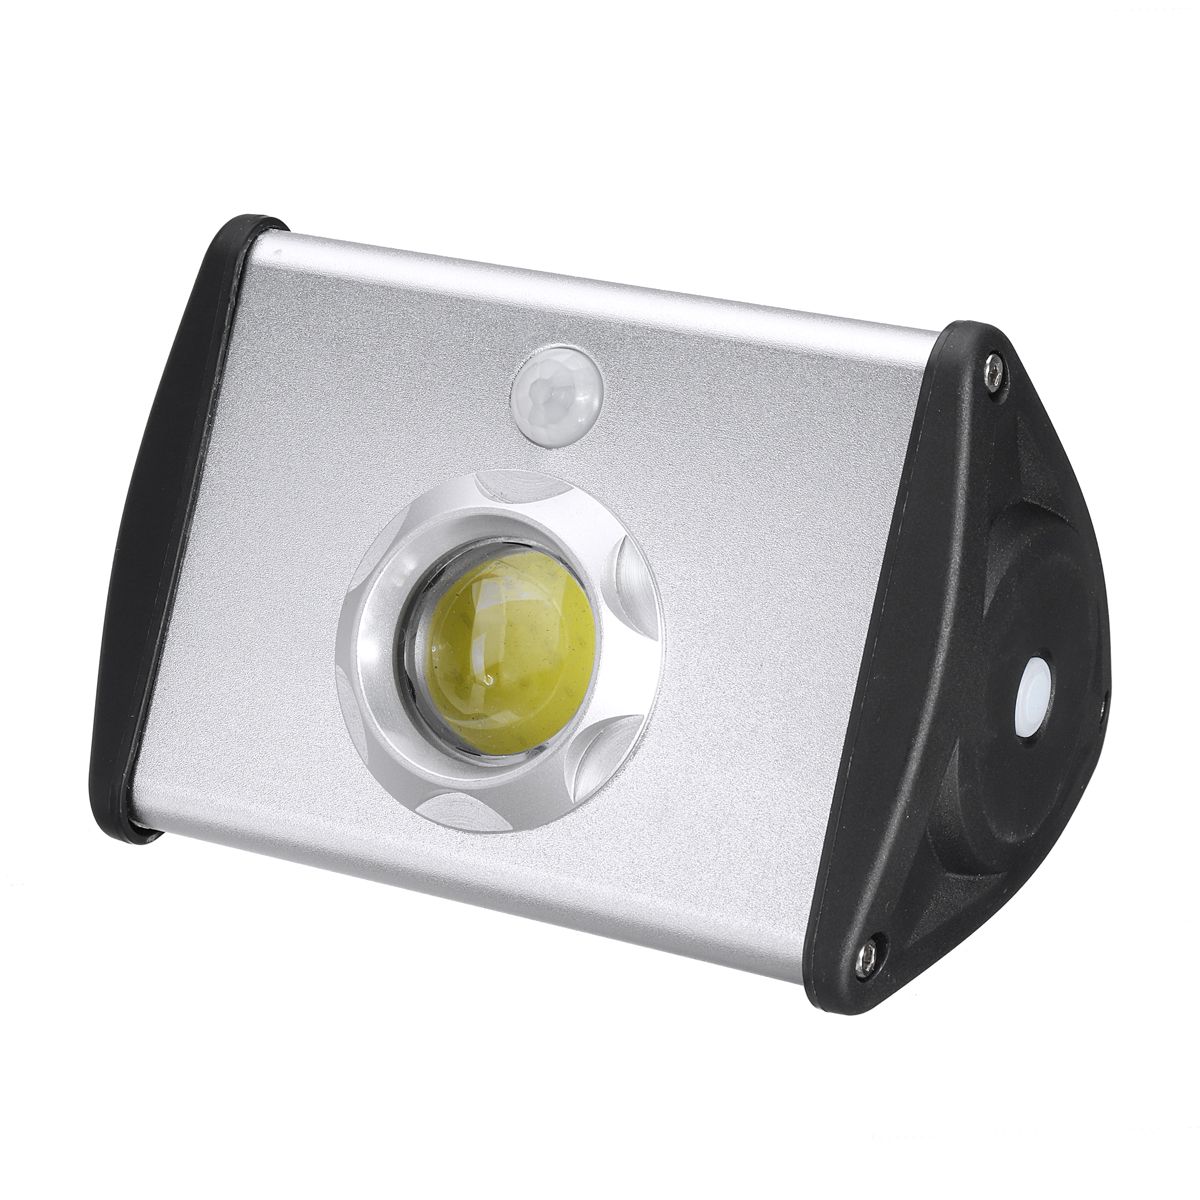 Solar-Power-COB-Motion-Sensor-Garden-Security-Lamp-Outdoor-Waterproof-Light-1651956